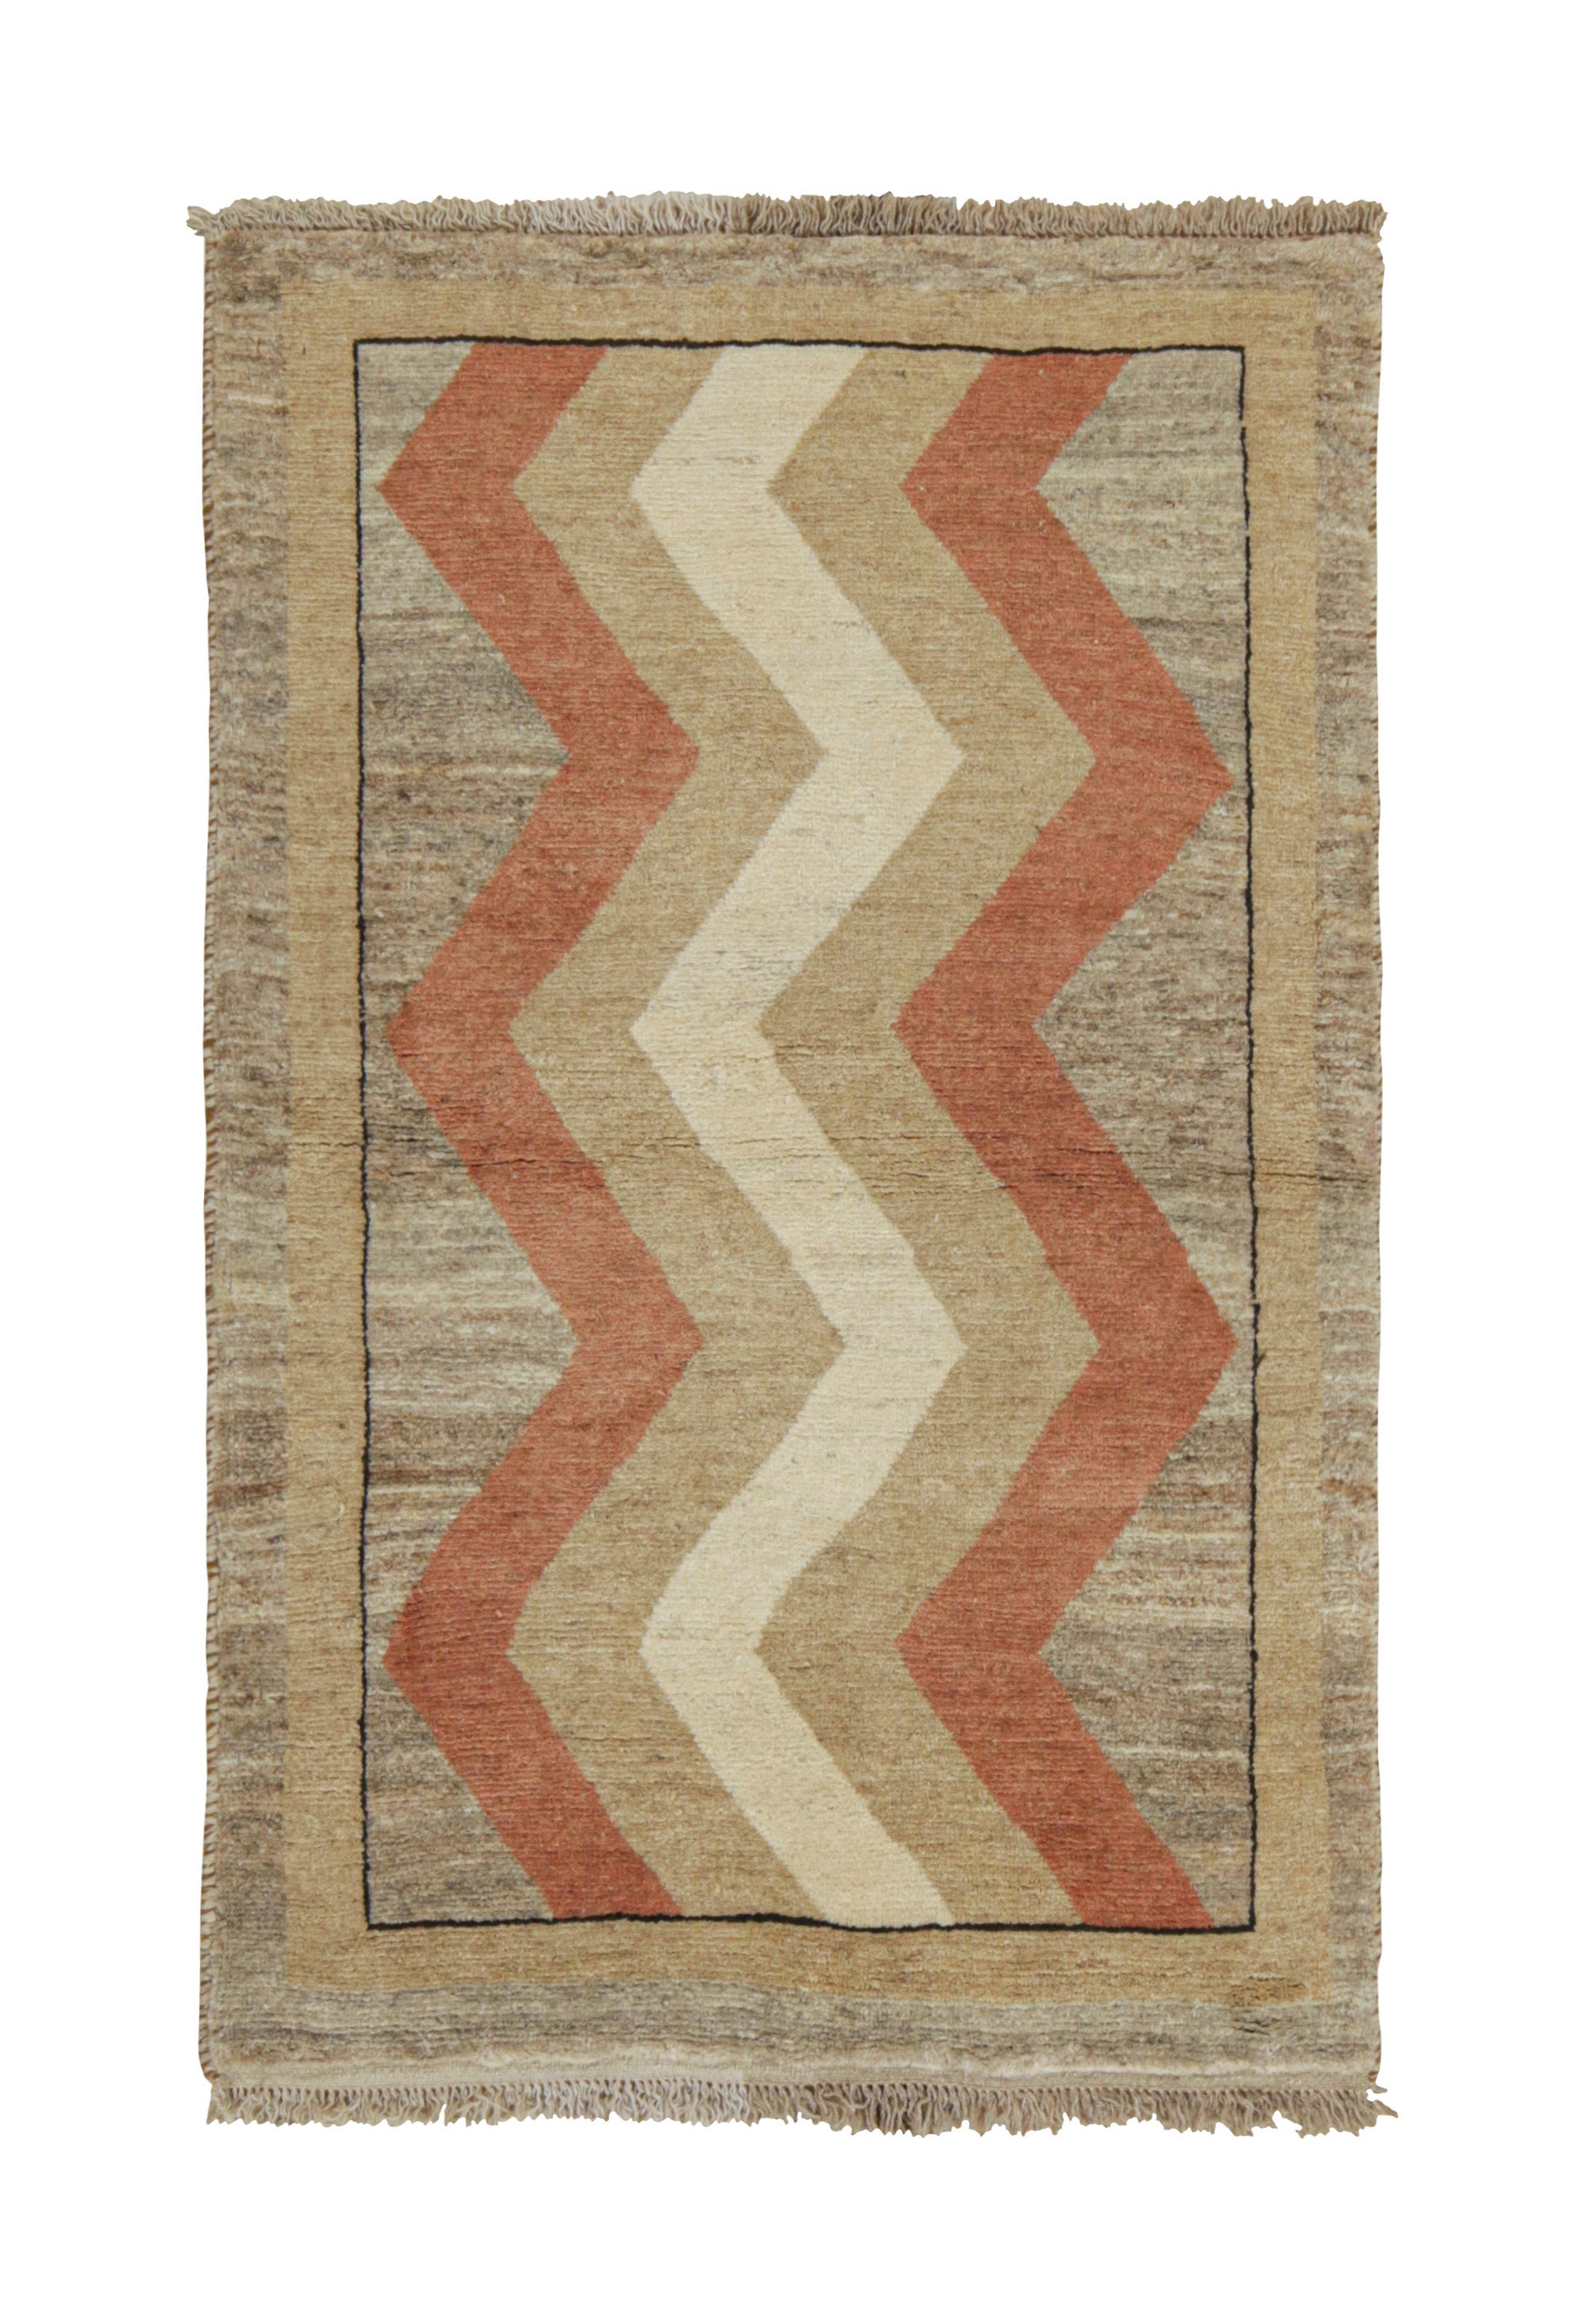 Gabbeh Vintage Vintage-Teppich in Beige-Braun und Rot mit Chevron-Muster von Teppich & Kelim